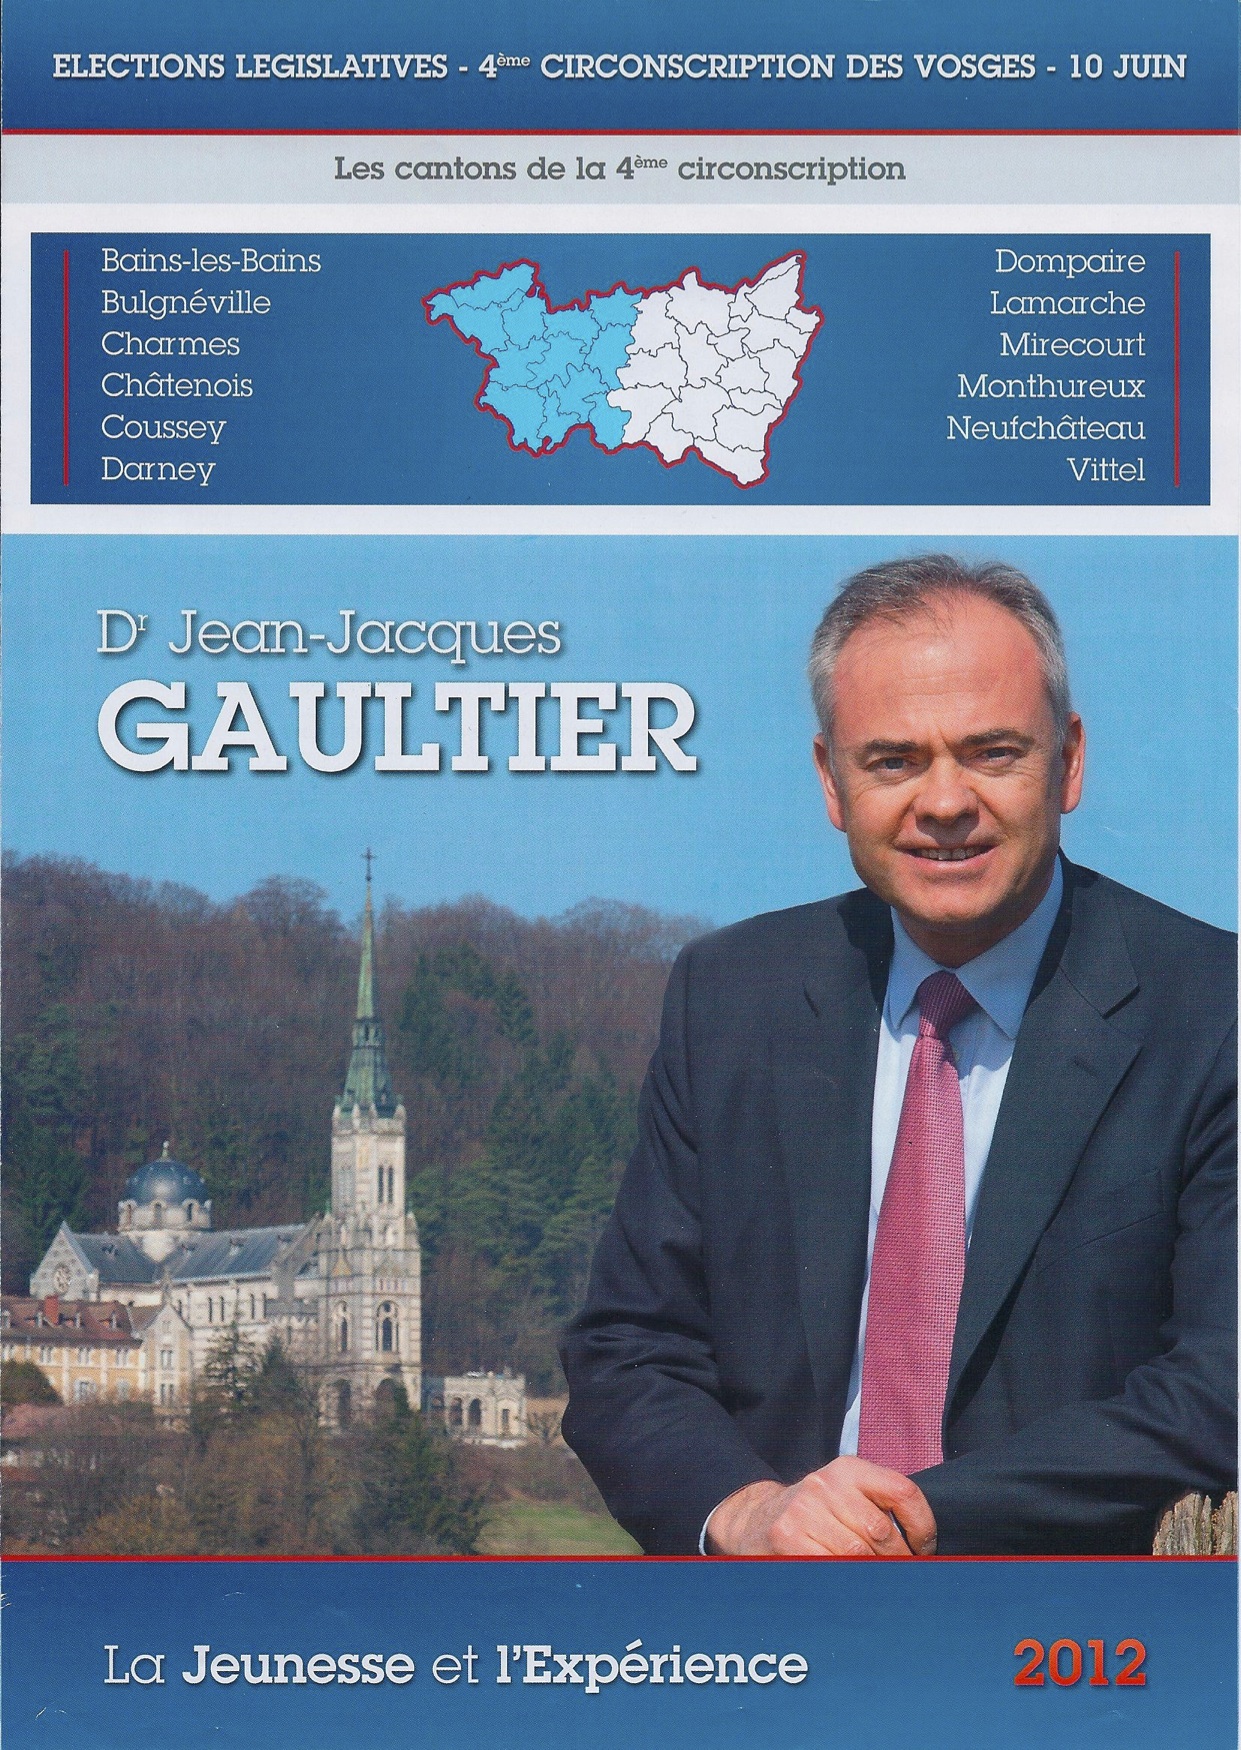 Jean-Jacques Gaultier, Programme du candidat de la 4ème circonscription des Vosges - Législatives 2012